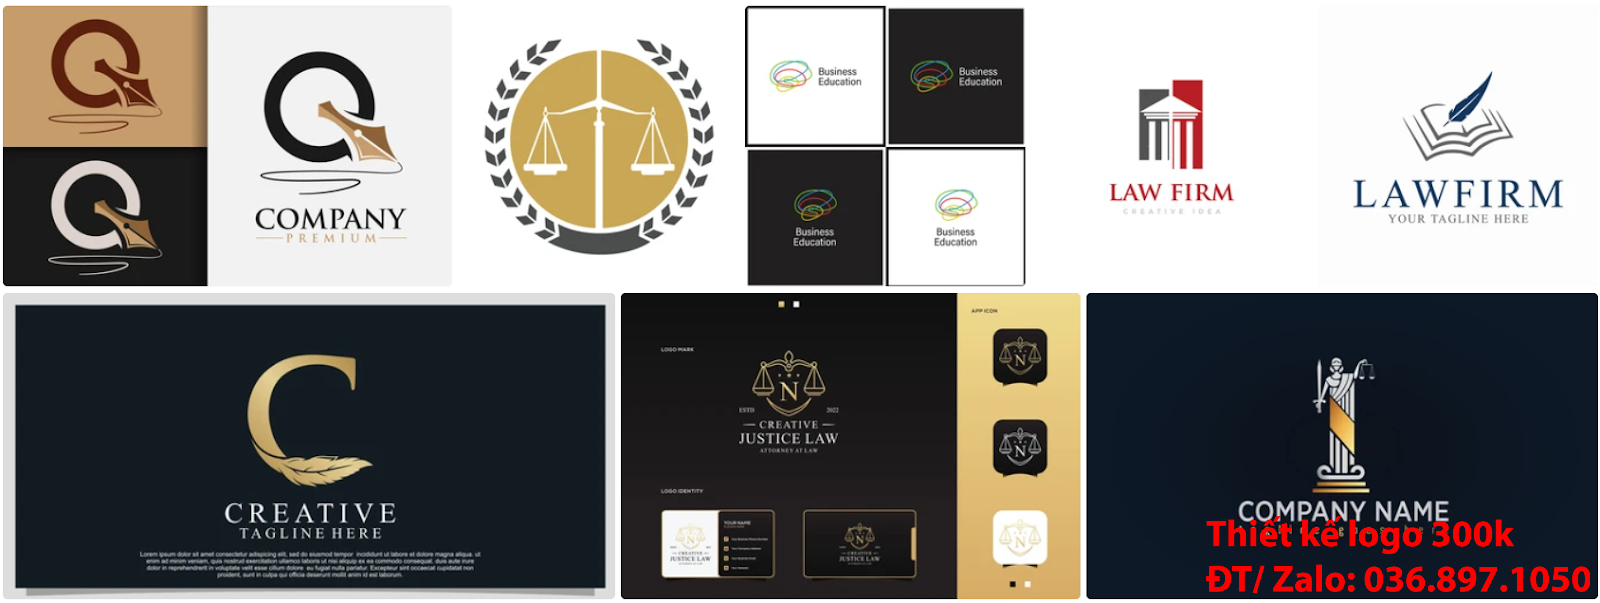 Đơn vị nhận thiết kế lô gô chuyên nghiệp với giá rẻ 300k uy tín có tạo Mẫu logo công ty luật sư đơn giản tinh tế